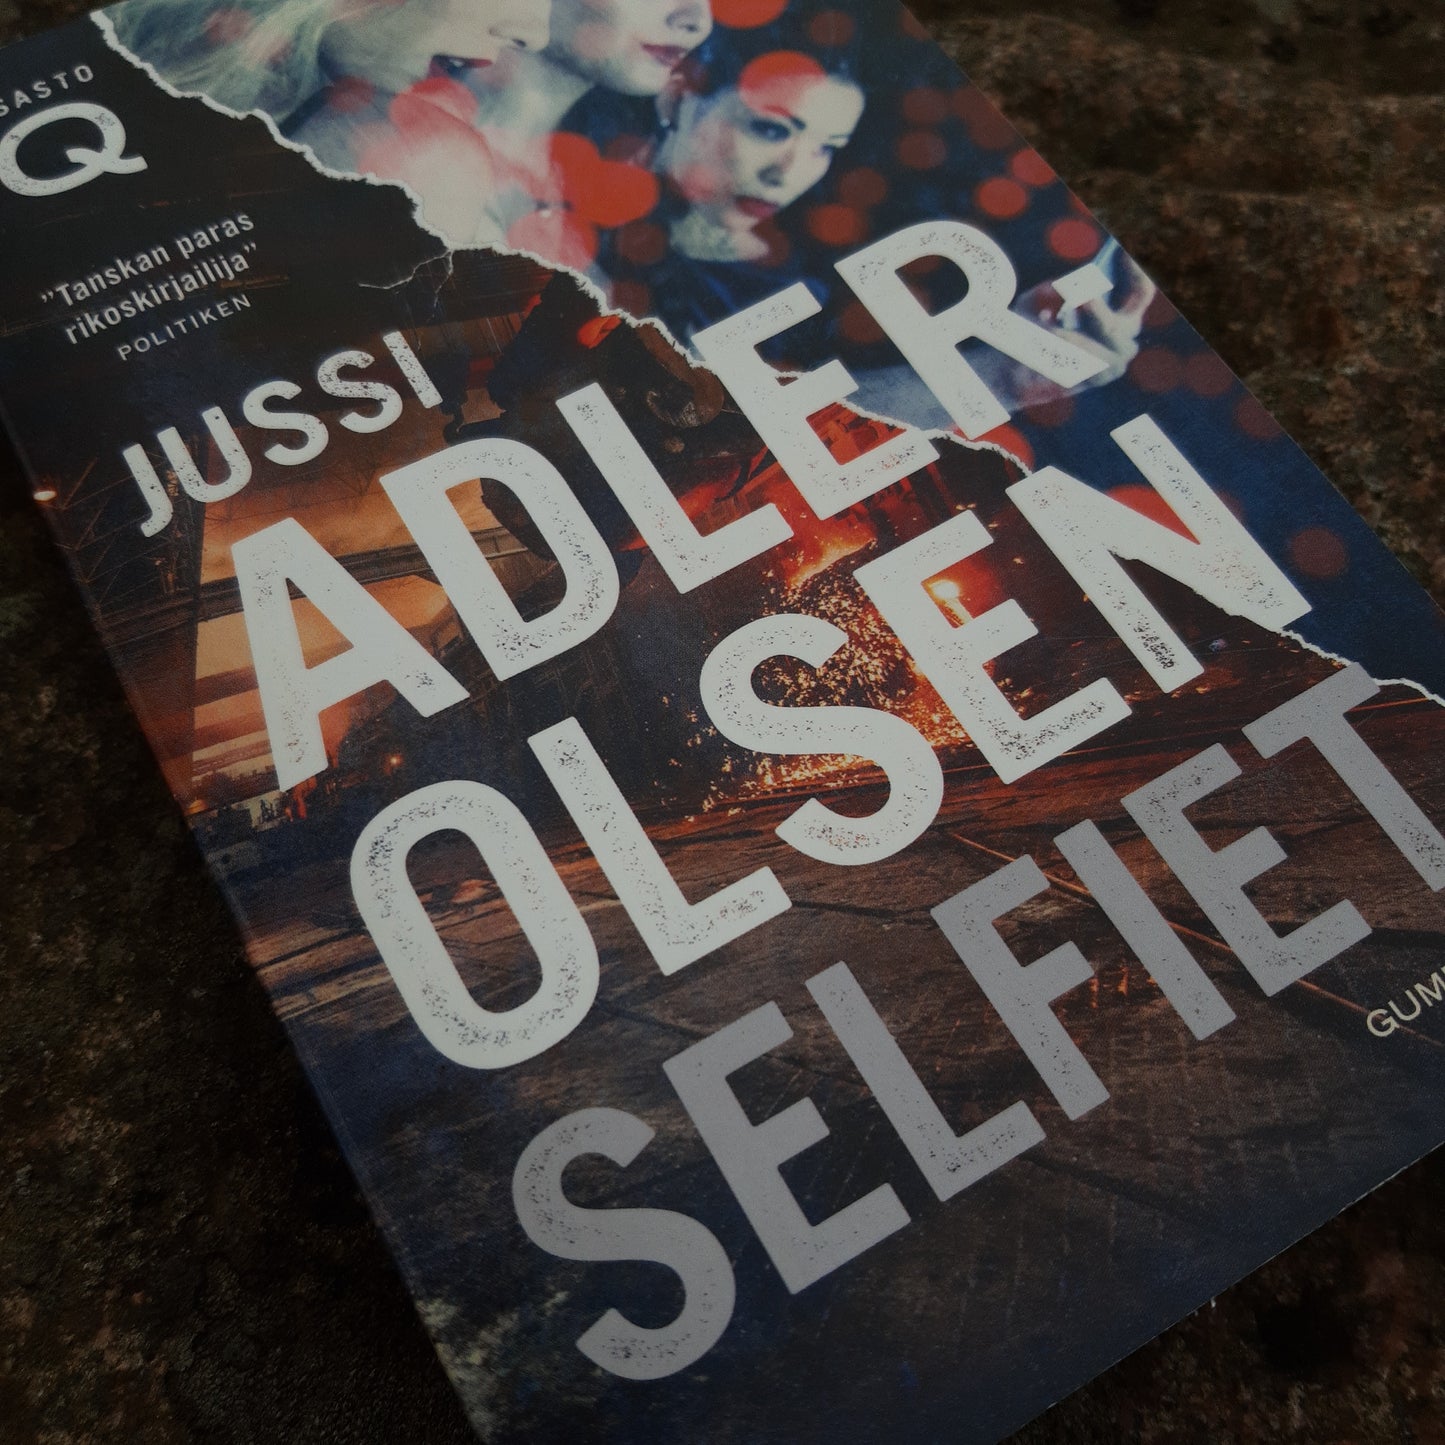 Selfiet - Jussi Adler-Olsen